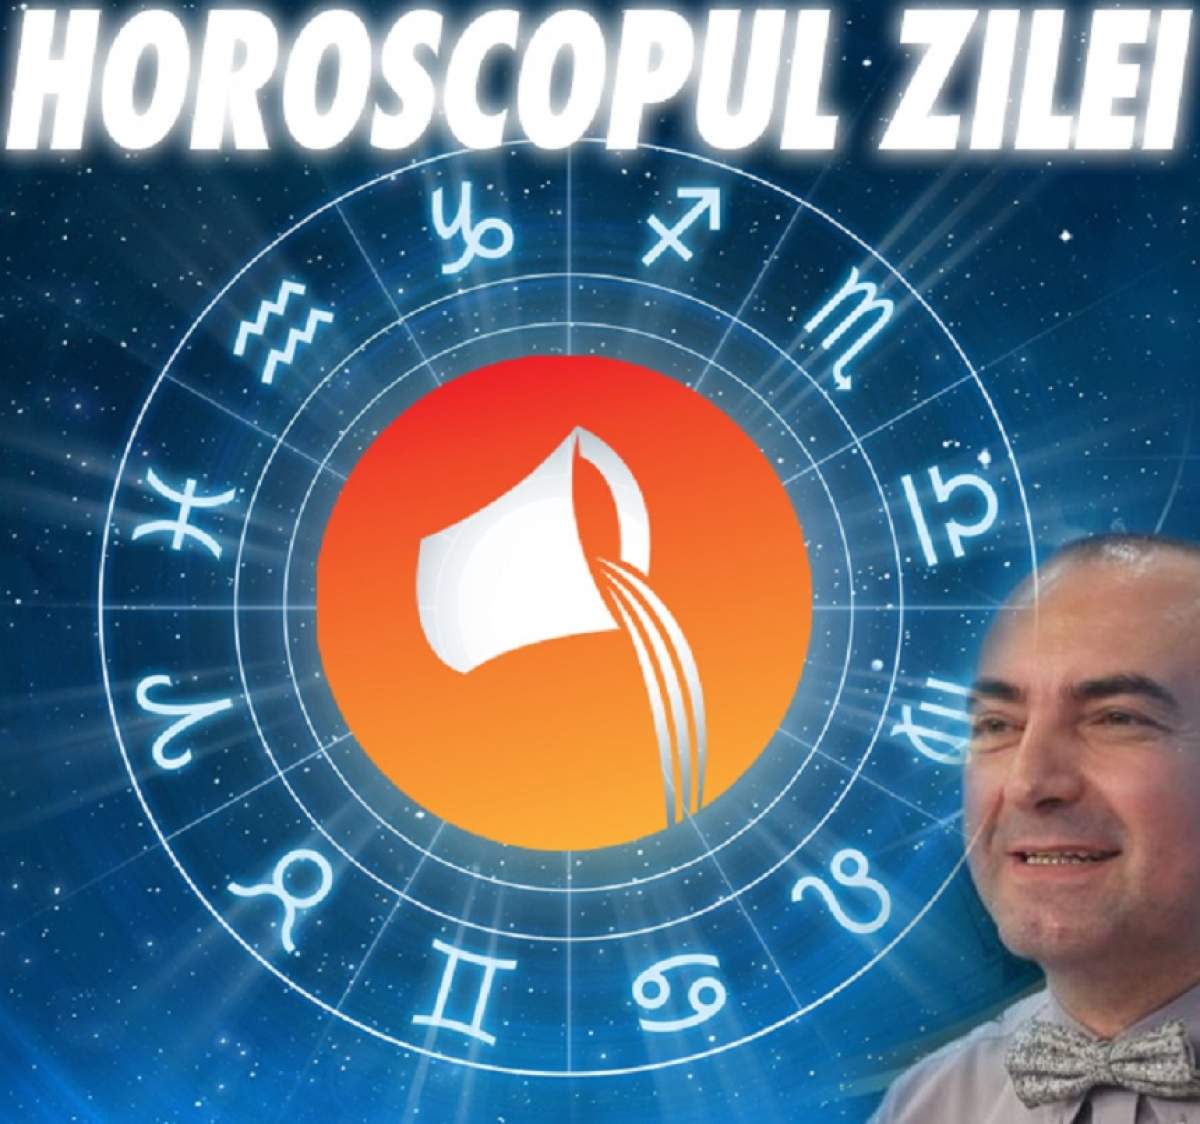 HOROSCOPUL ZILEI - 22 SEPTEMBRIE: VărsătorI, este momentul să spuneţi lucrurilor pe nume! N-aveţi idee ce vă aşteaptă